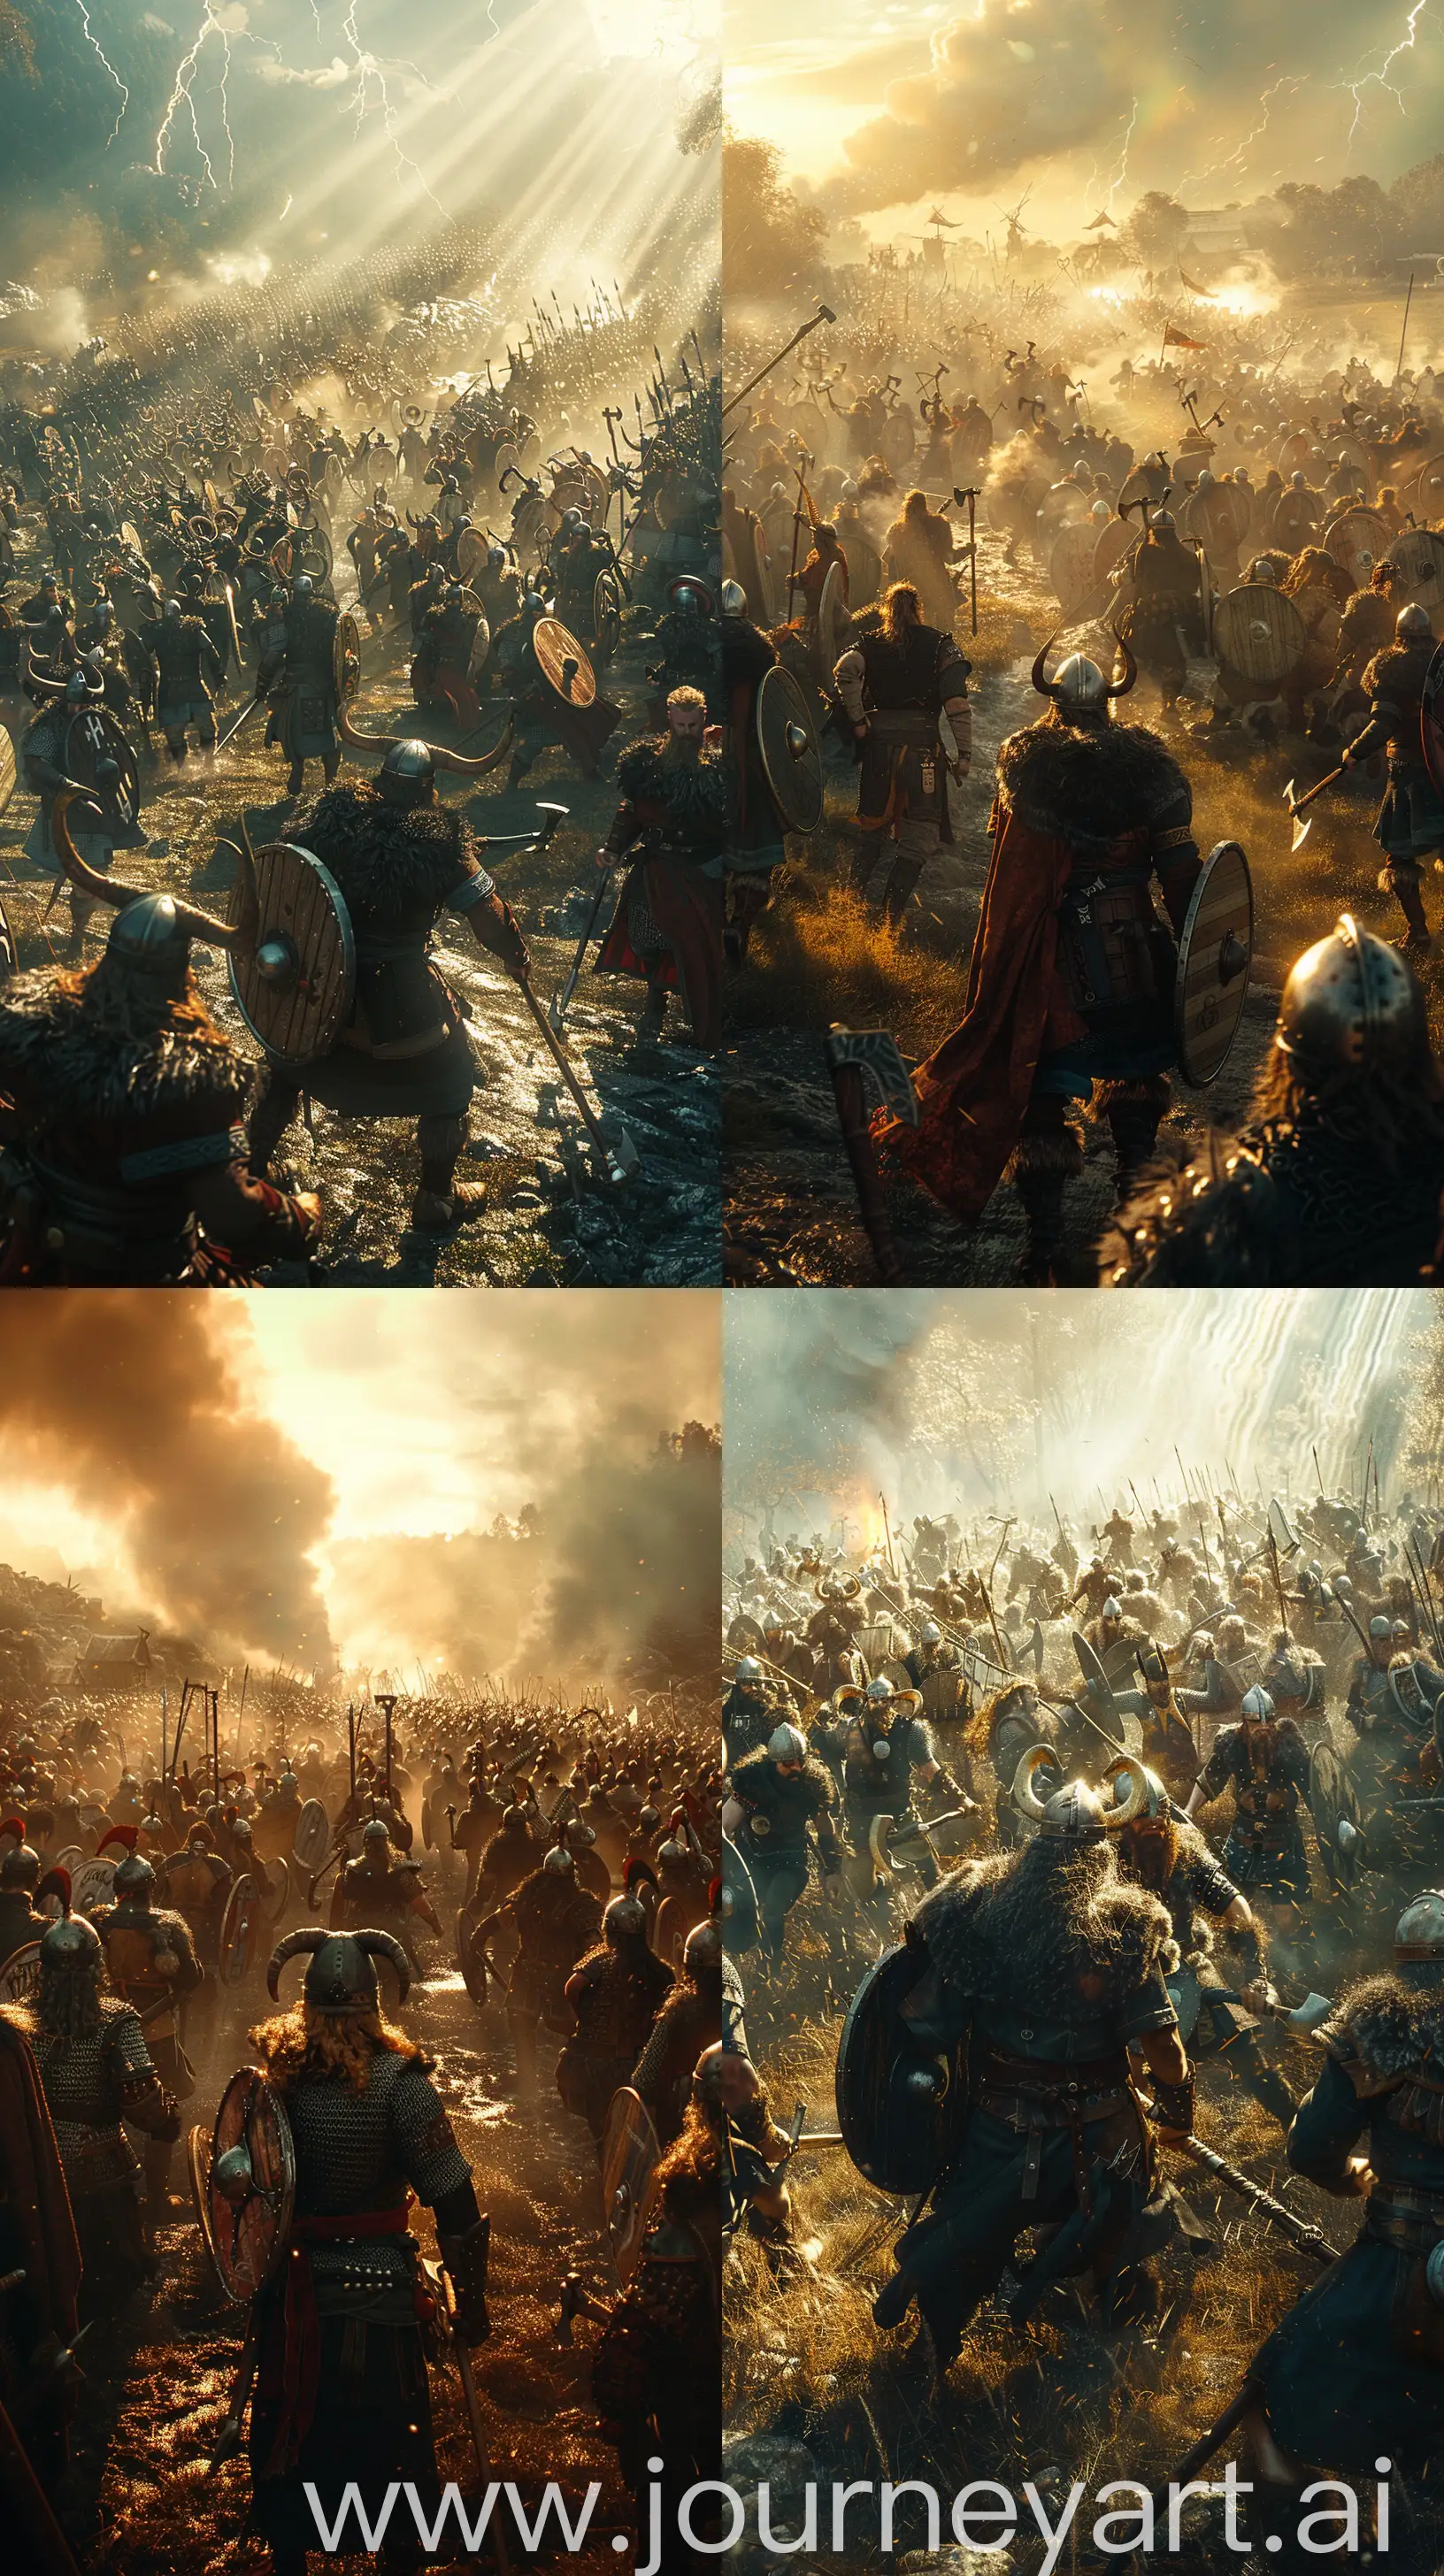 Epic-Viking-Battle-Warriors-Clash-in-Fierce-Combat-on-Sunlit-Fields